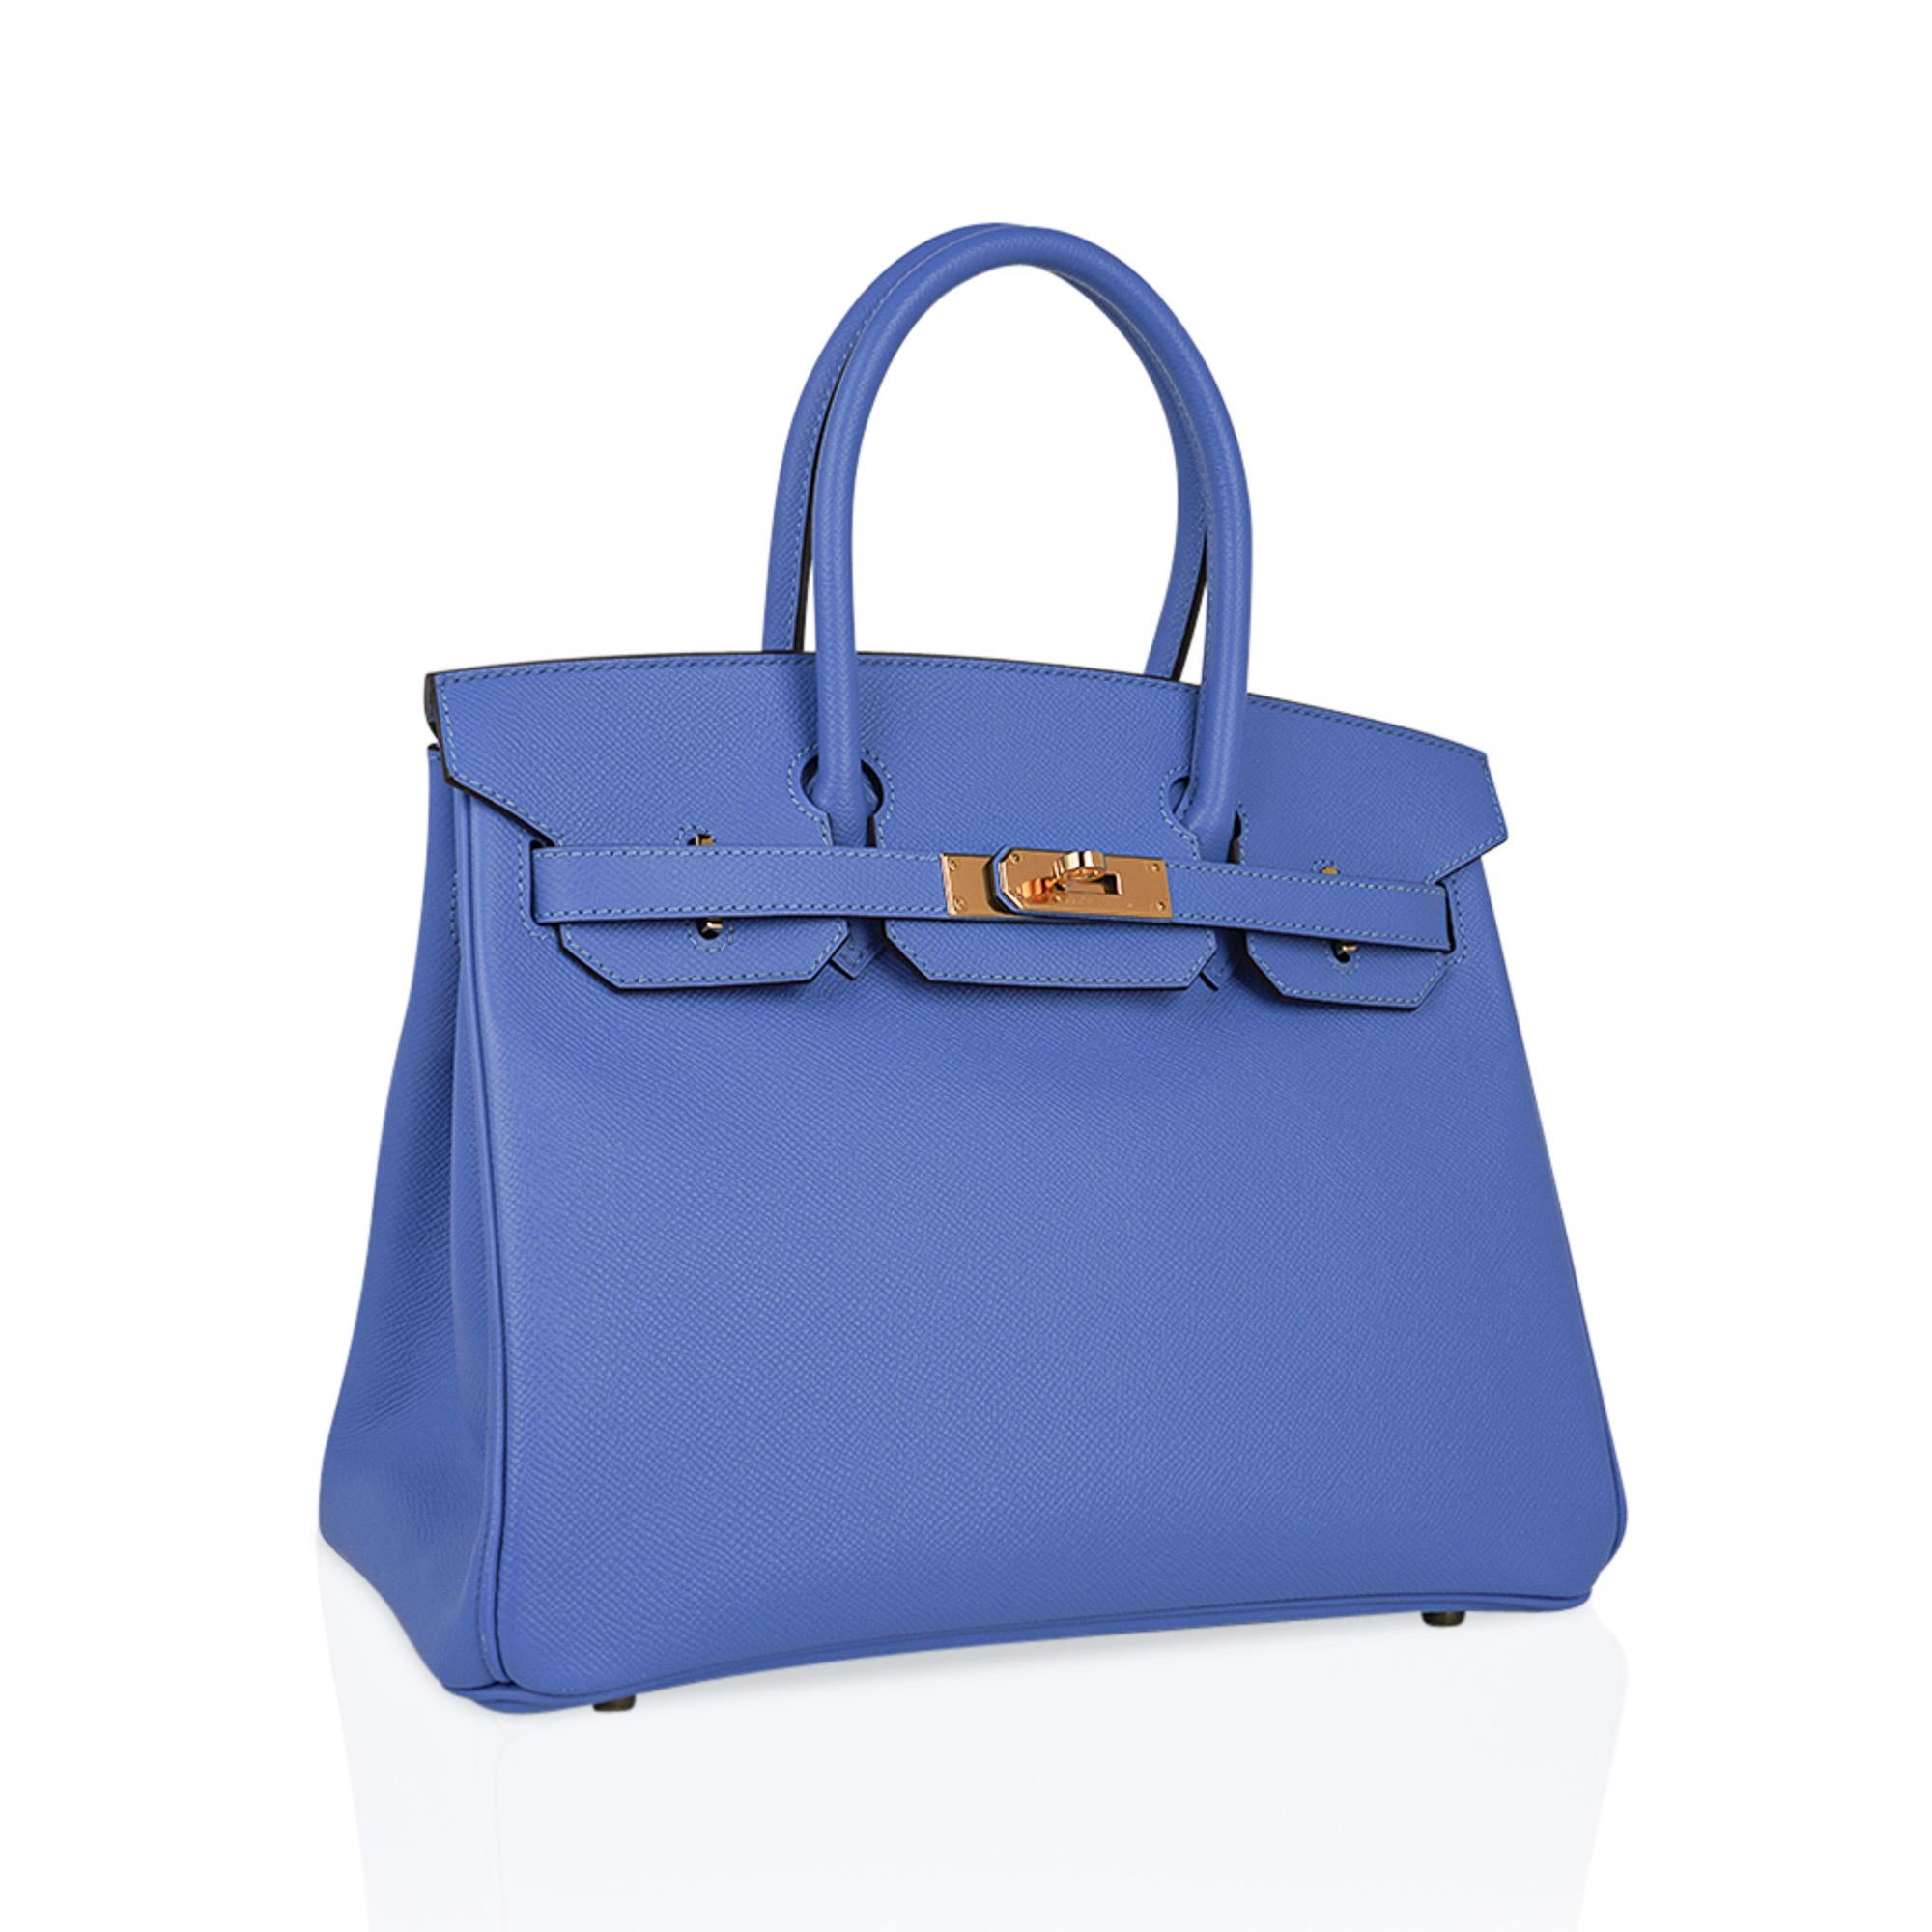 Mightychic propose un rare sac Hermes Birkin 30 Blue Paradis.
Ce sac est réalisé en cuir d'Epsom, qui conserve la forme du sac et est plus léger. 
Le tout est rehaussé d'une riche quincaillerie dorée.
Ce sac Birkin bleu, qui n'est plus produit, vous